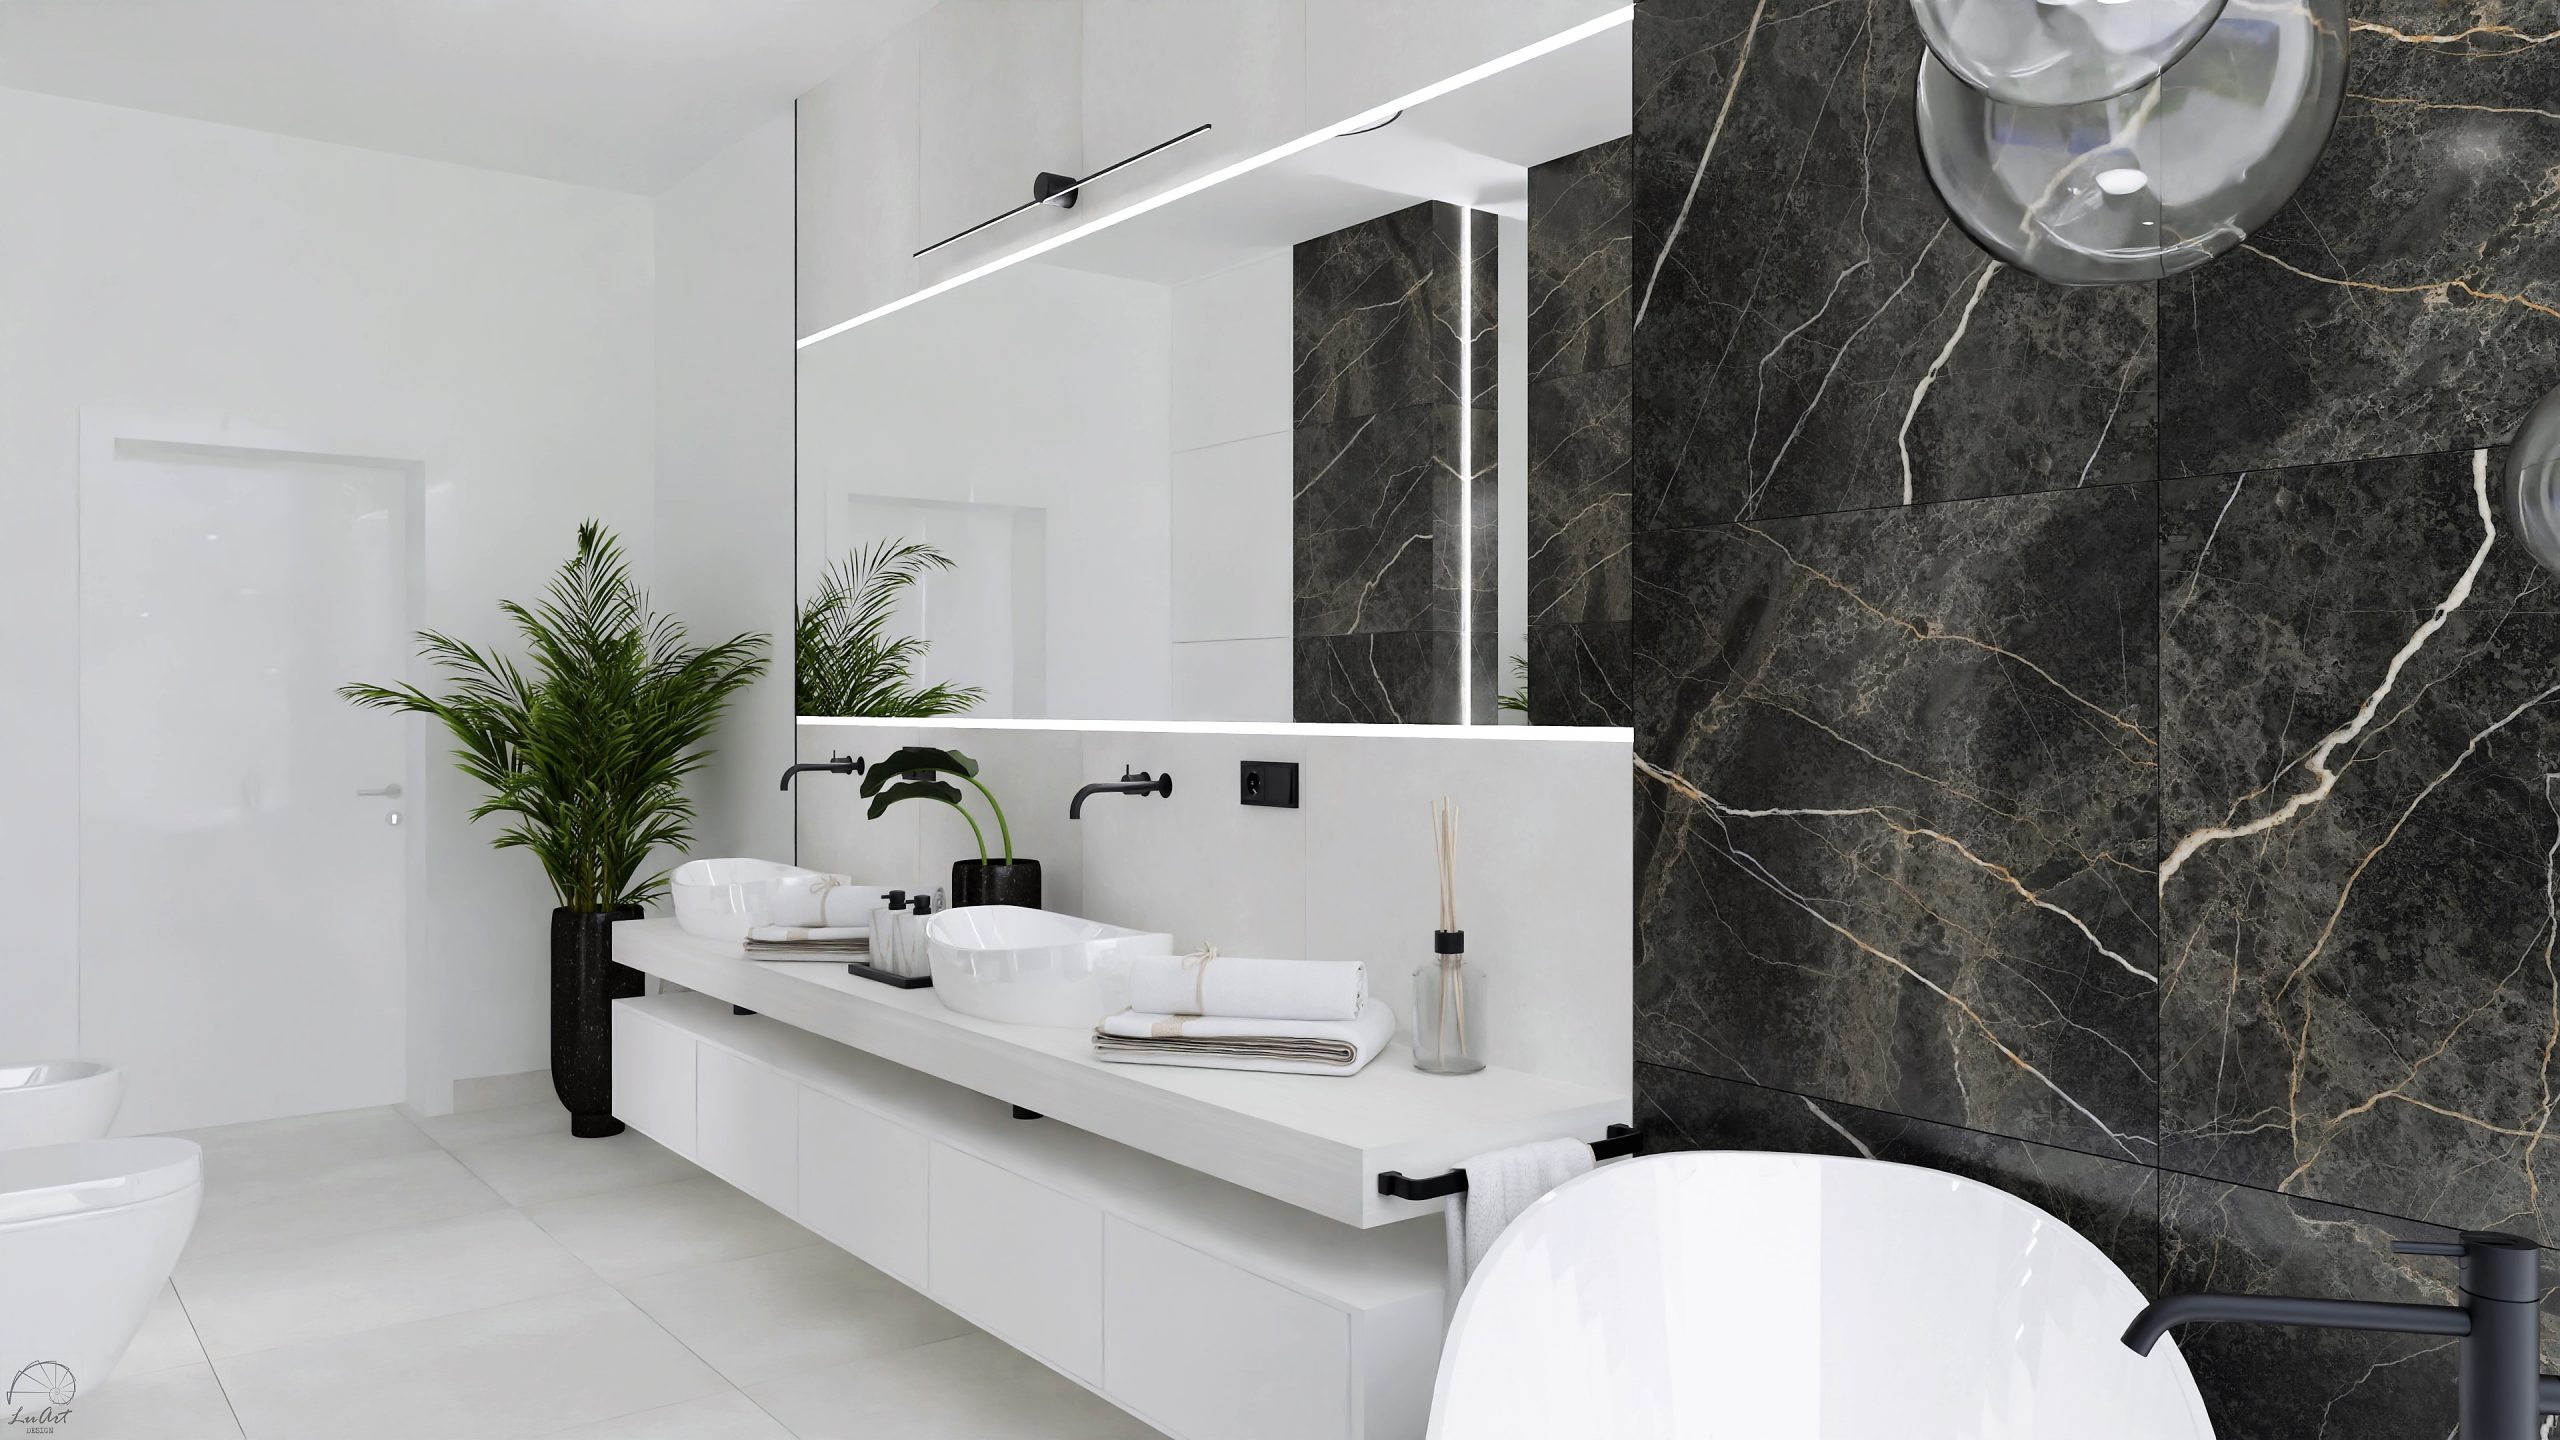 Zdjęcie 5 - Elegancka łazienka w koncepcji Black & White - aranżacja, inspiracja